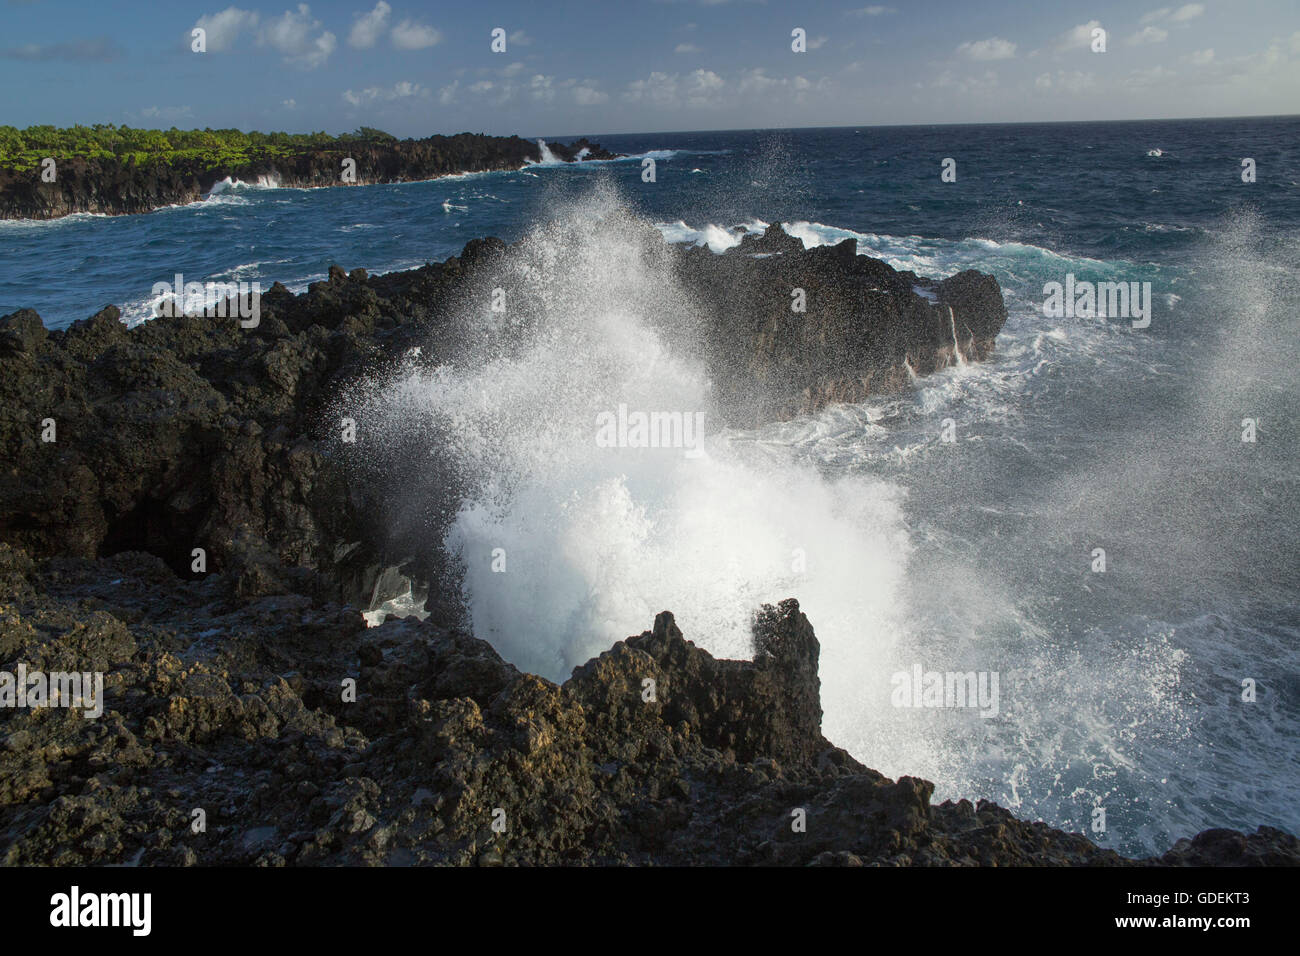 Maui,Wai'anapanapa,parco nazionale,costa,STATI UNITI D'AMERICA,Hawaii,l'America,rock,cliff,pietra,mare,schiuma,surf, Foto Stock